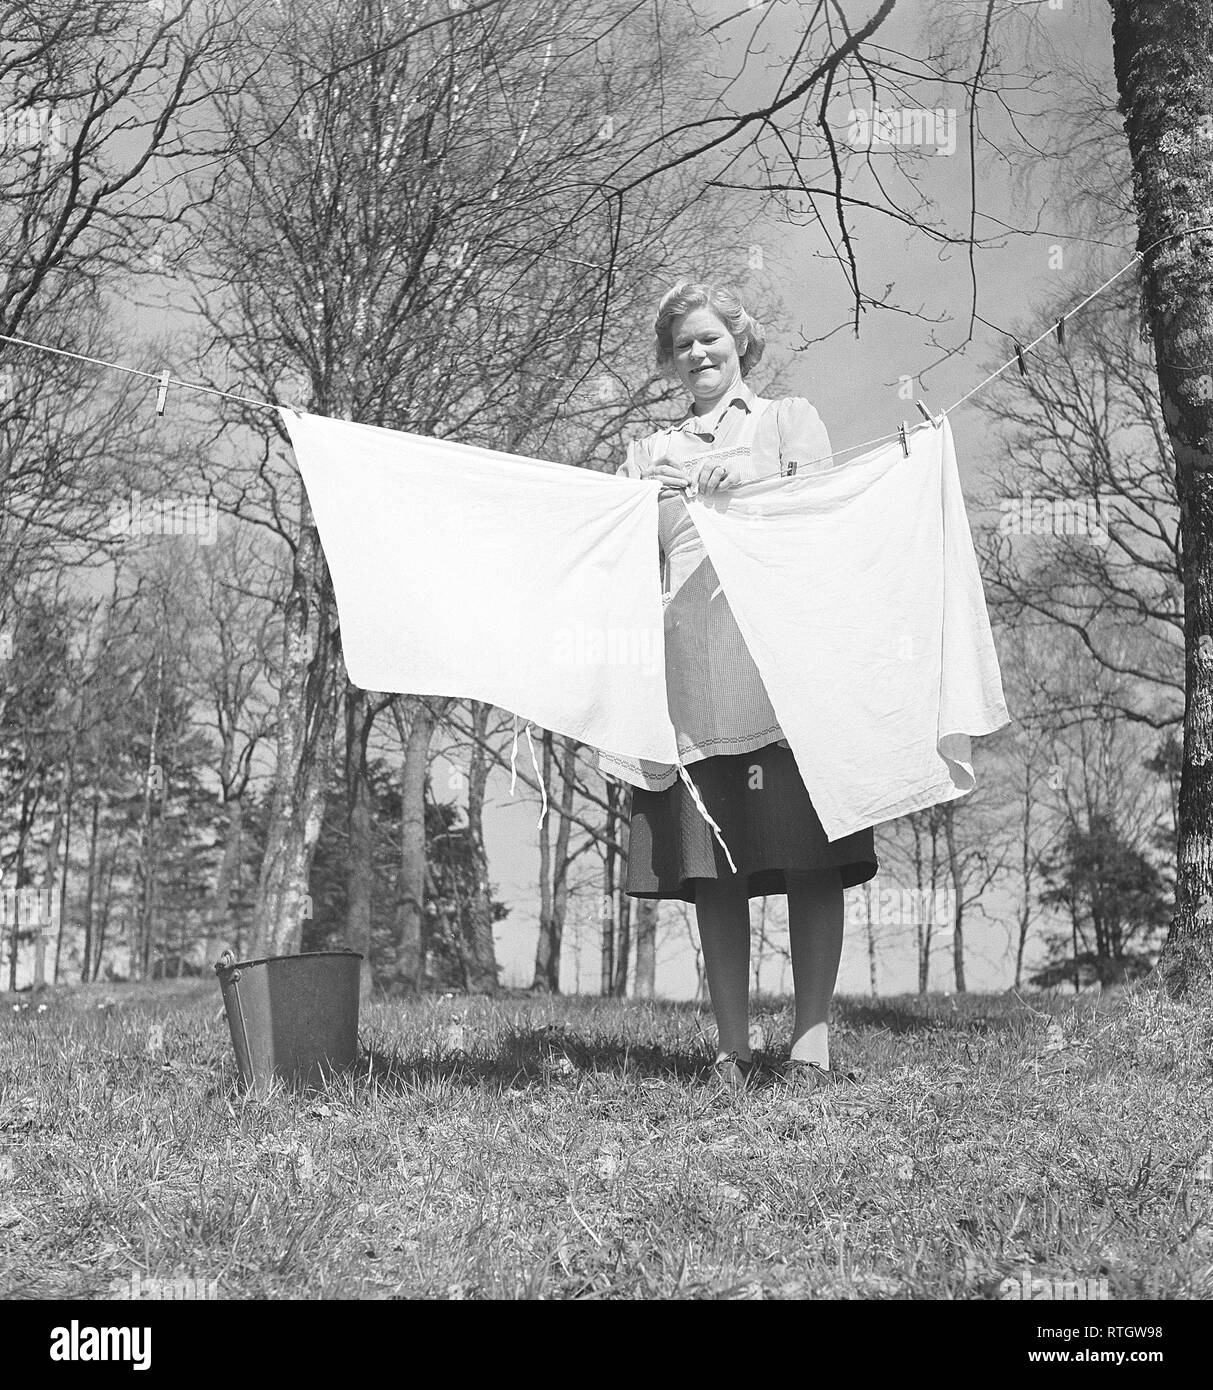 Faire la lessive dans les années 1950. Une dame est dans le jardin d'accrocher le linge à sécher. Kristoffersson Photo ref BC7-8. Suède 1951 Banque D'Images